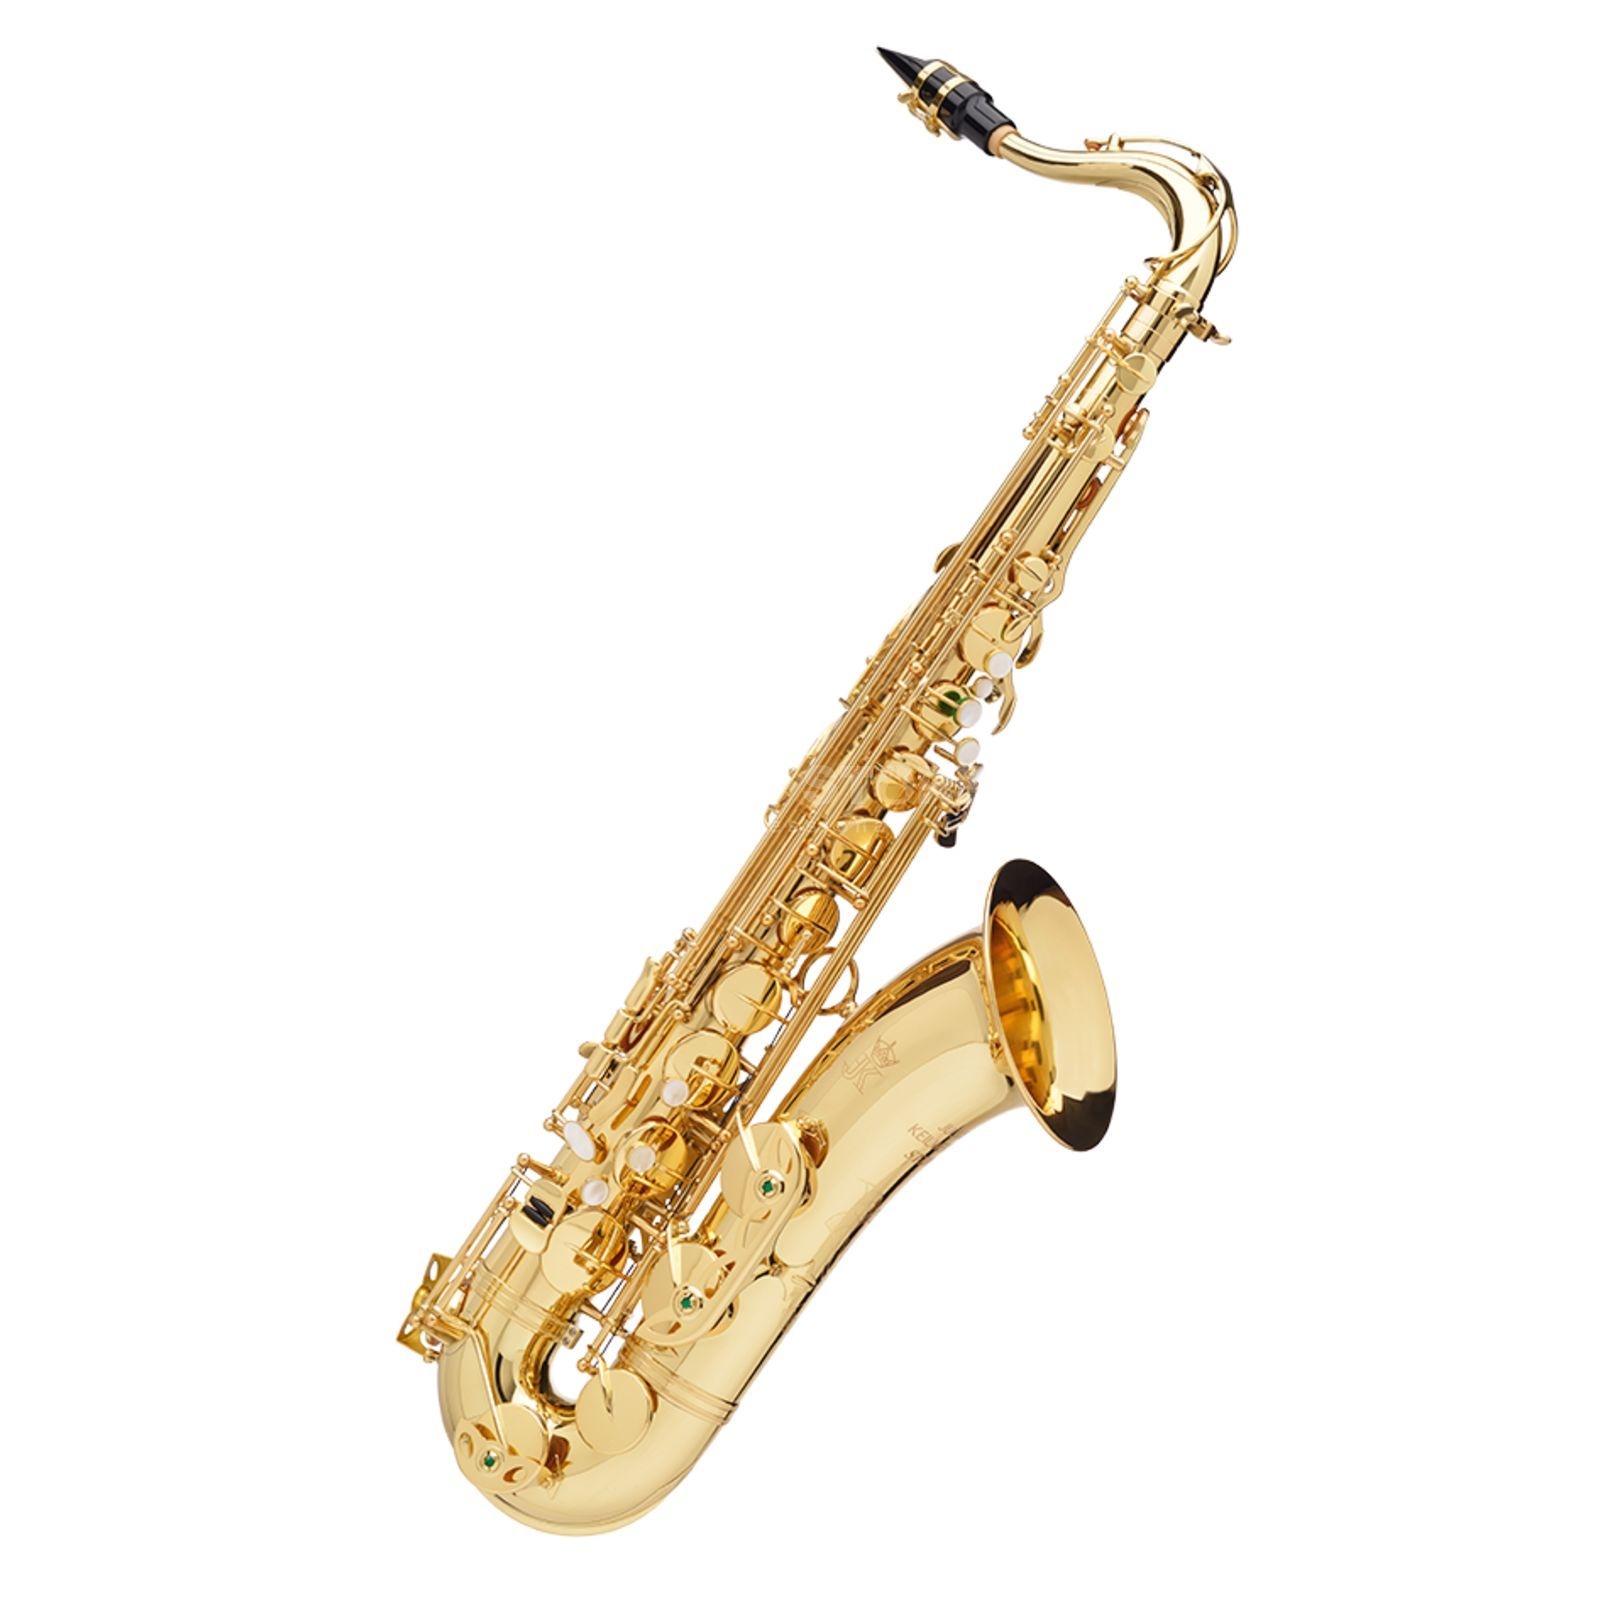 KEILWERTH ST110 - Saxophone ténor intermédiaire, avec étui et bec complet - JK3103-8-0